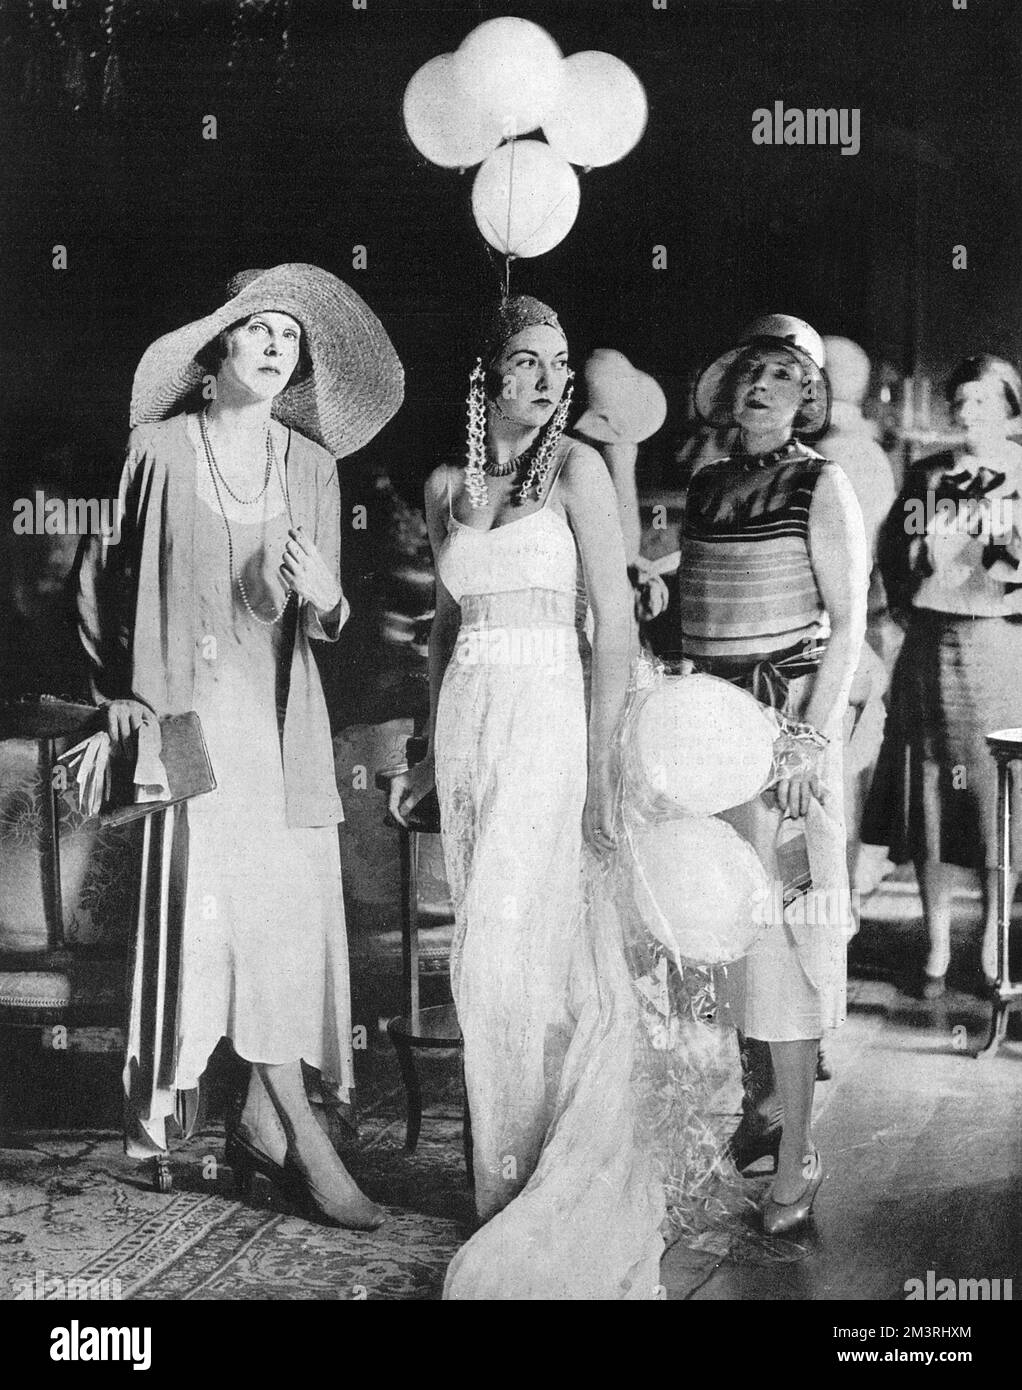 Lady Diana Cooper, Mme Baillie-Hamilton et Lady Cunard répètent pour le bal de l'affiche vivante, tenu en aide au Fonds des fêtes de campagne pour les enfants et à l'hôpital Elizabeth Garrett Anderson de l'hôtel Park Lane. 1930 Banque D'Images